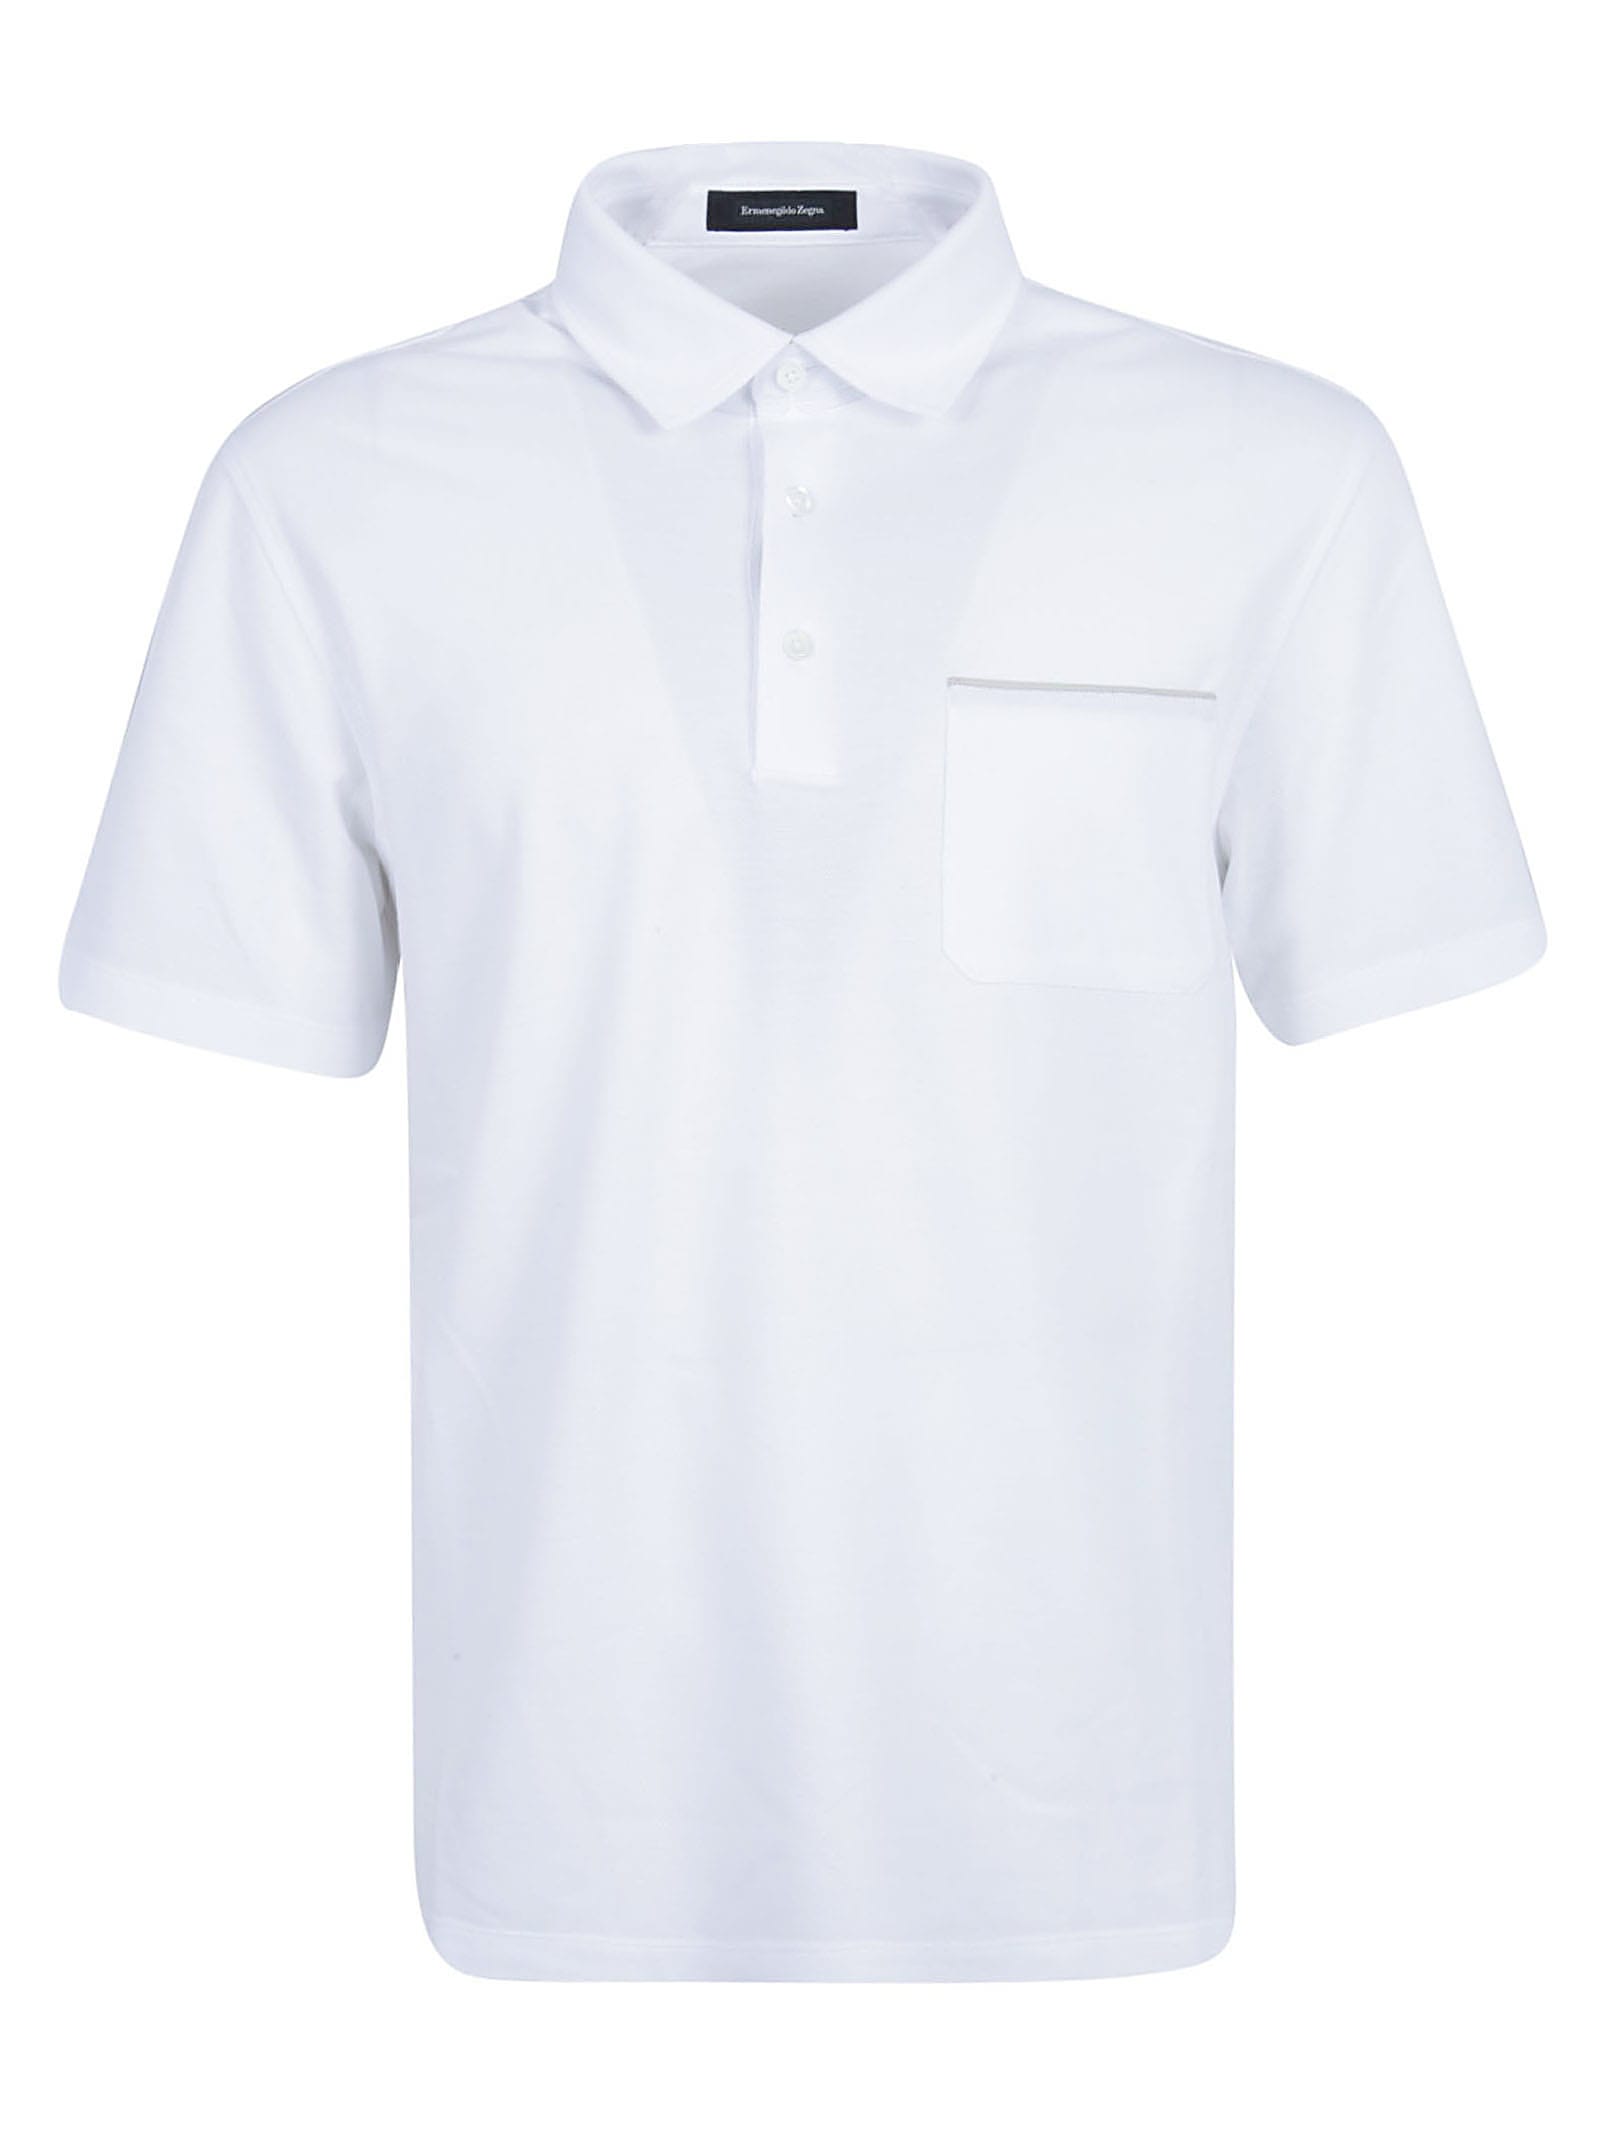 Ermenegildo Zegna Essential Cotton Piquet Polo Shirt